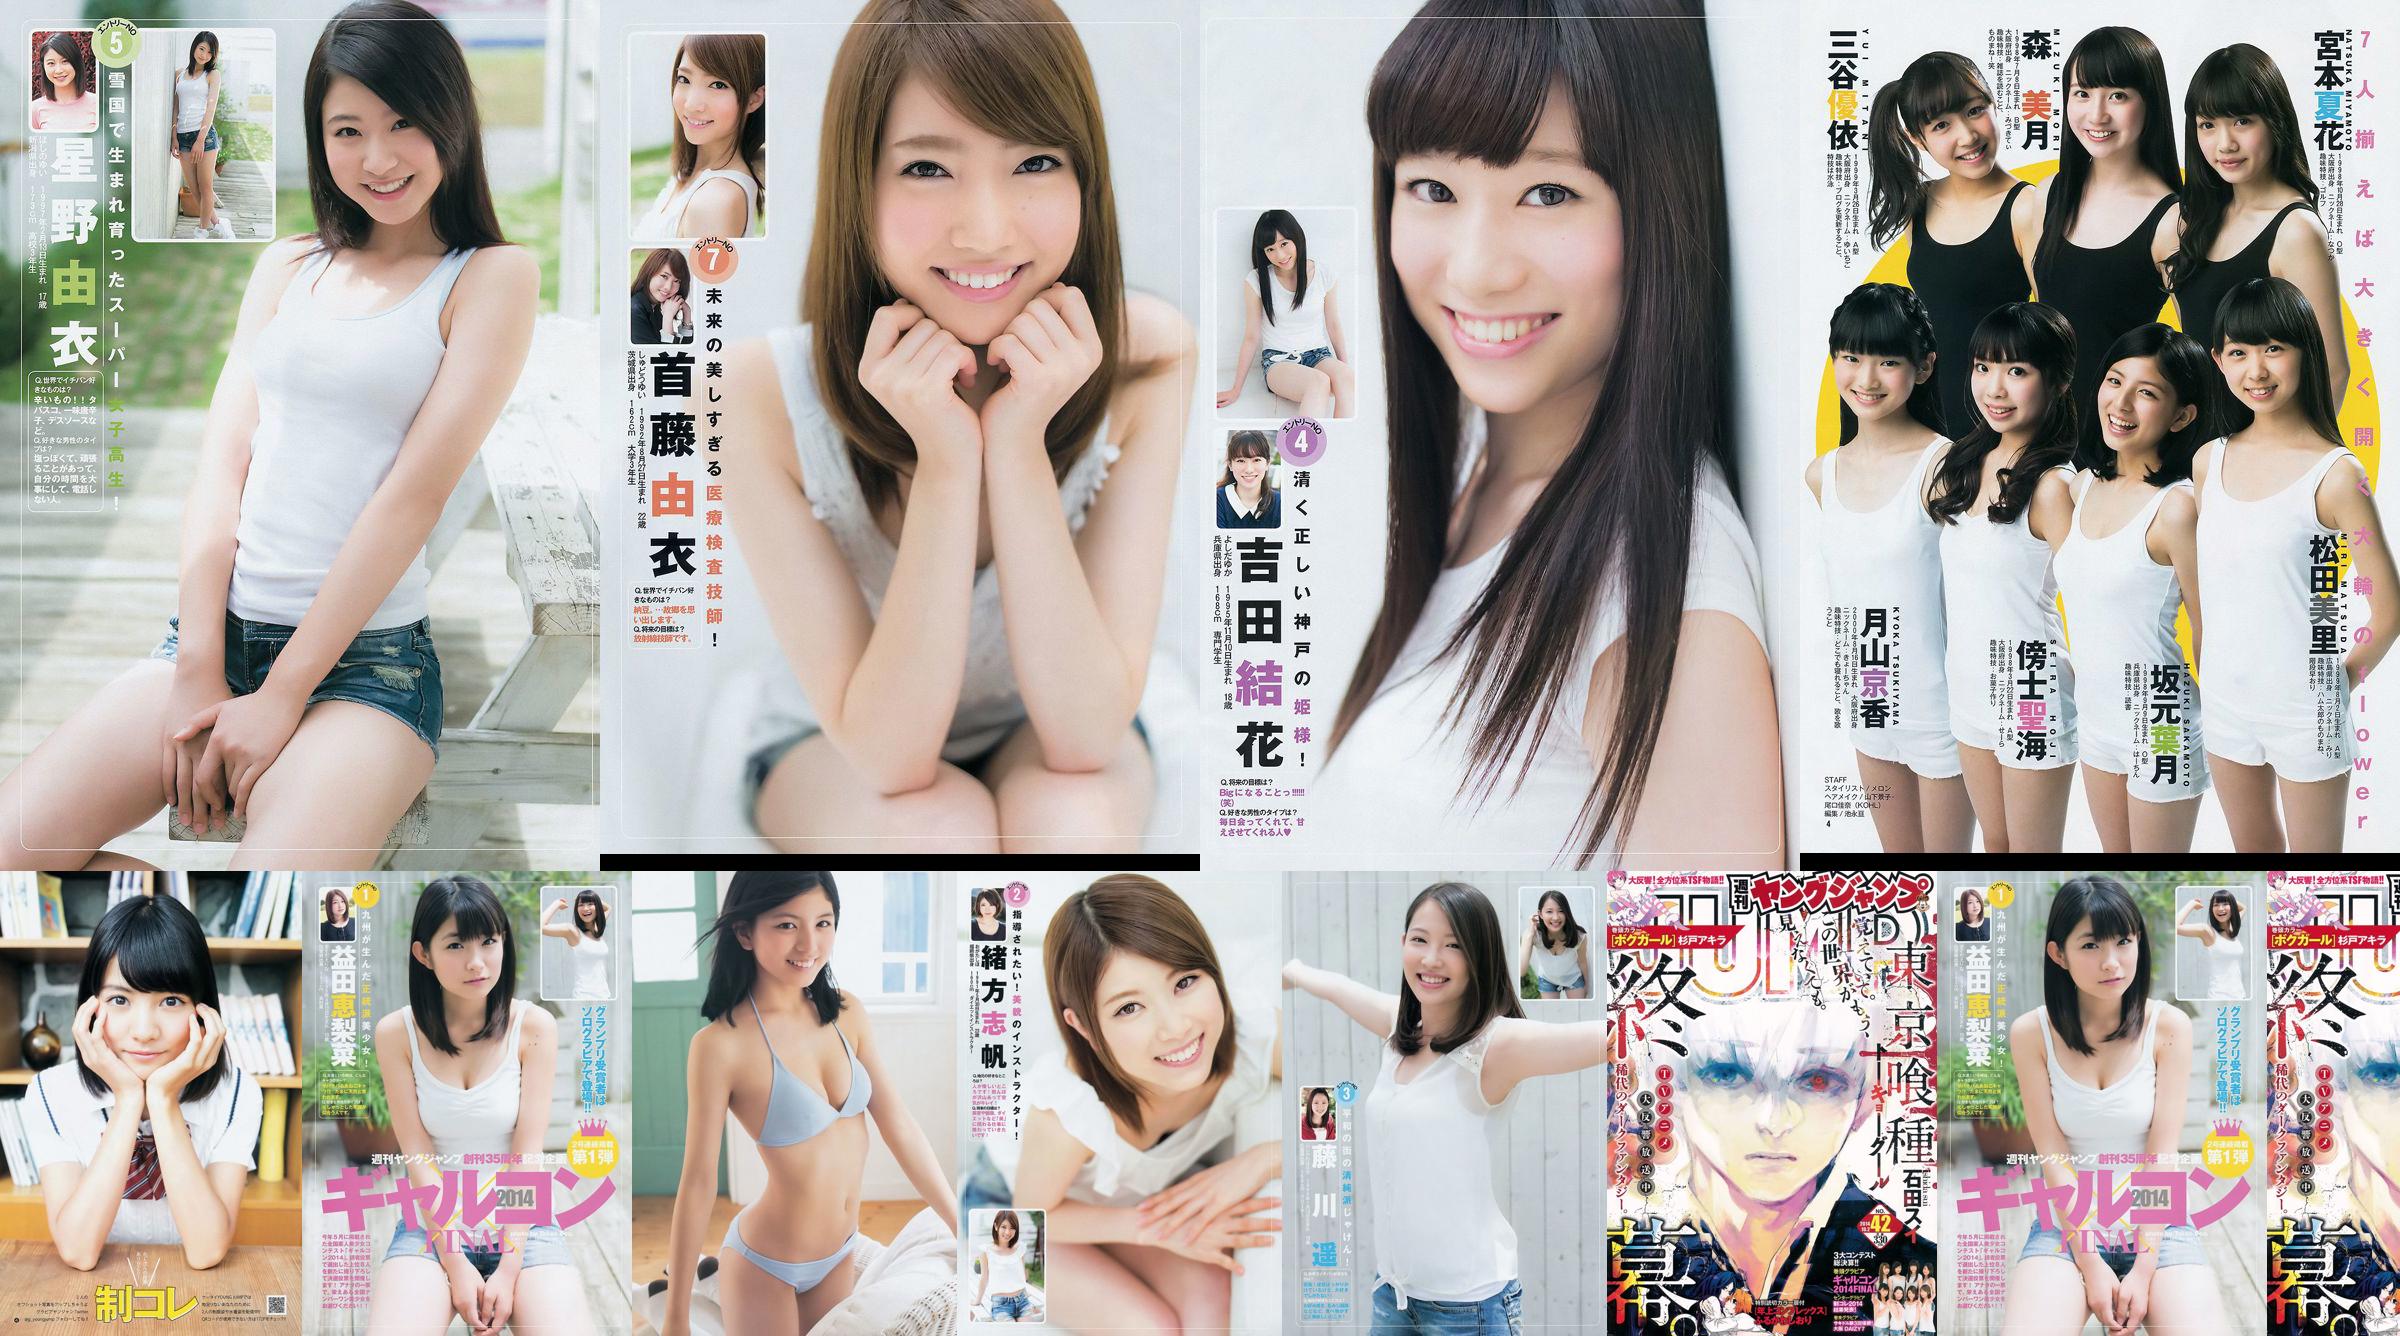 Galcon 2014 System Collection Ultimate 2014 Osaka DAIZY7 [Weekly Young Jump] 2014 No.42 Photo No.648451 Pagina 1